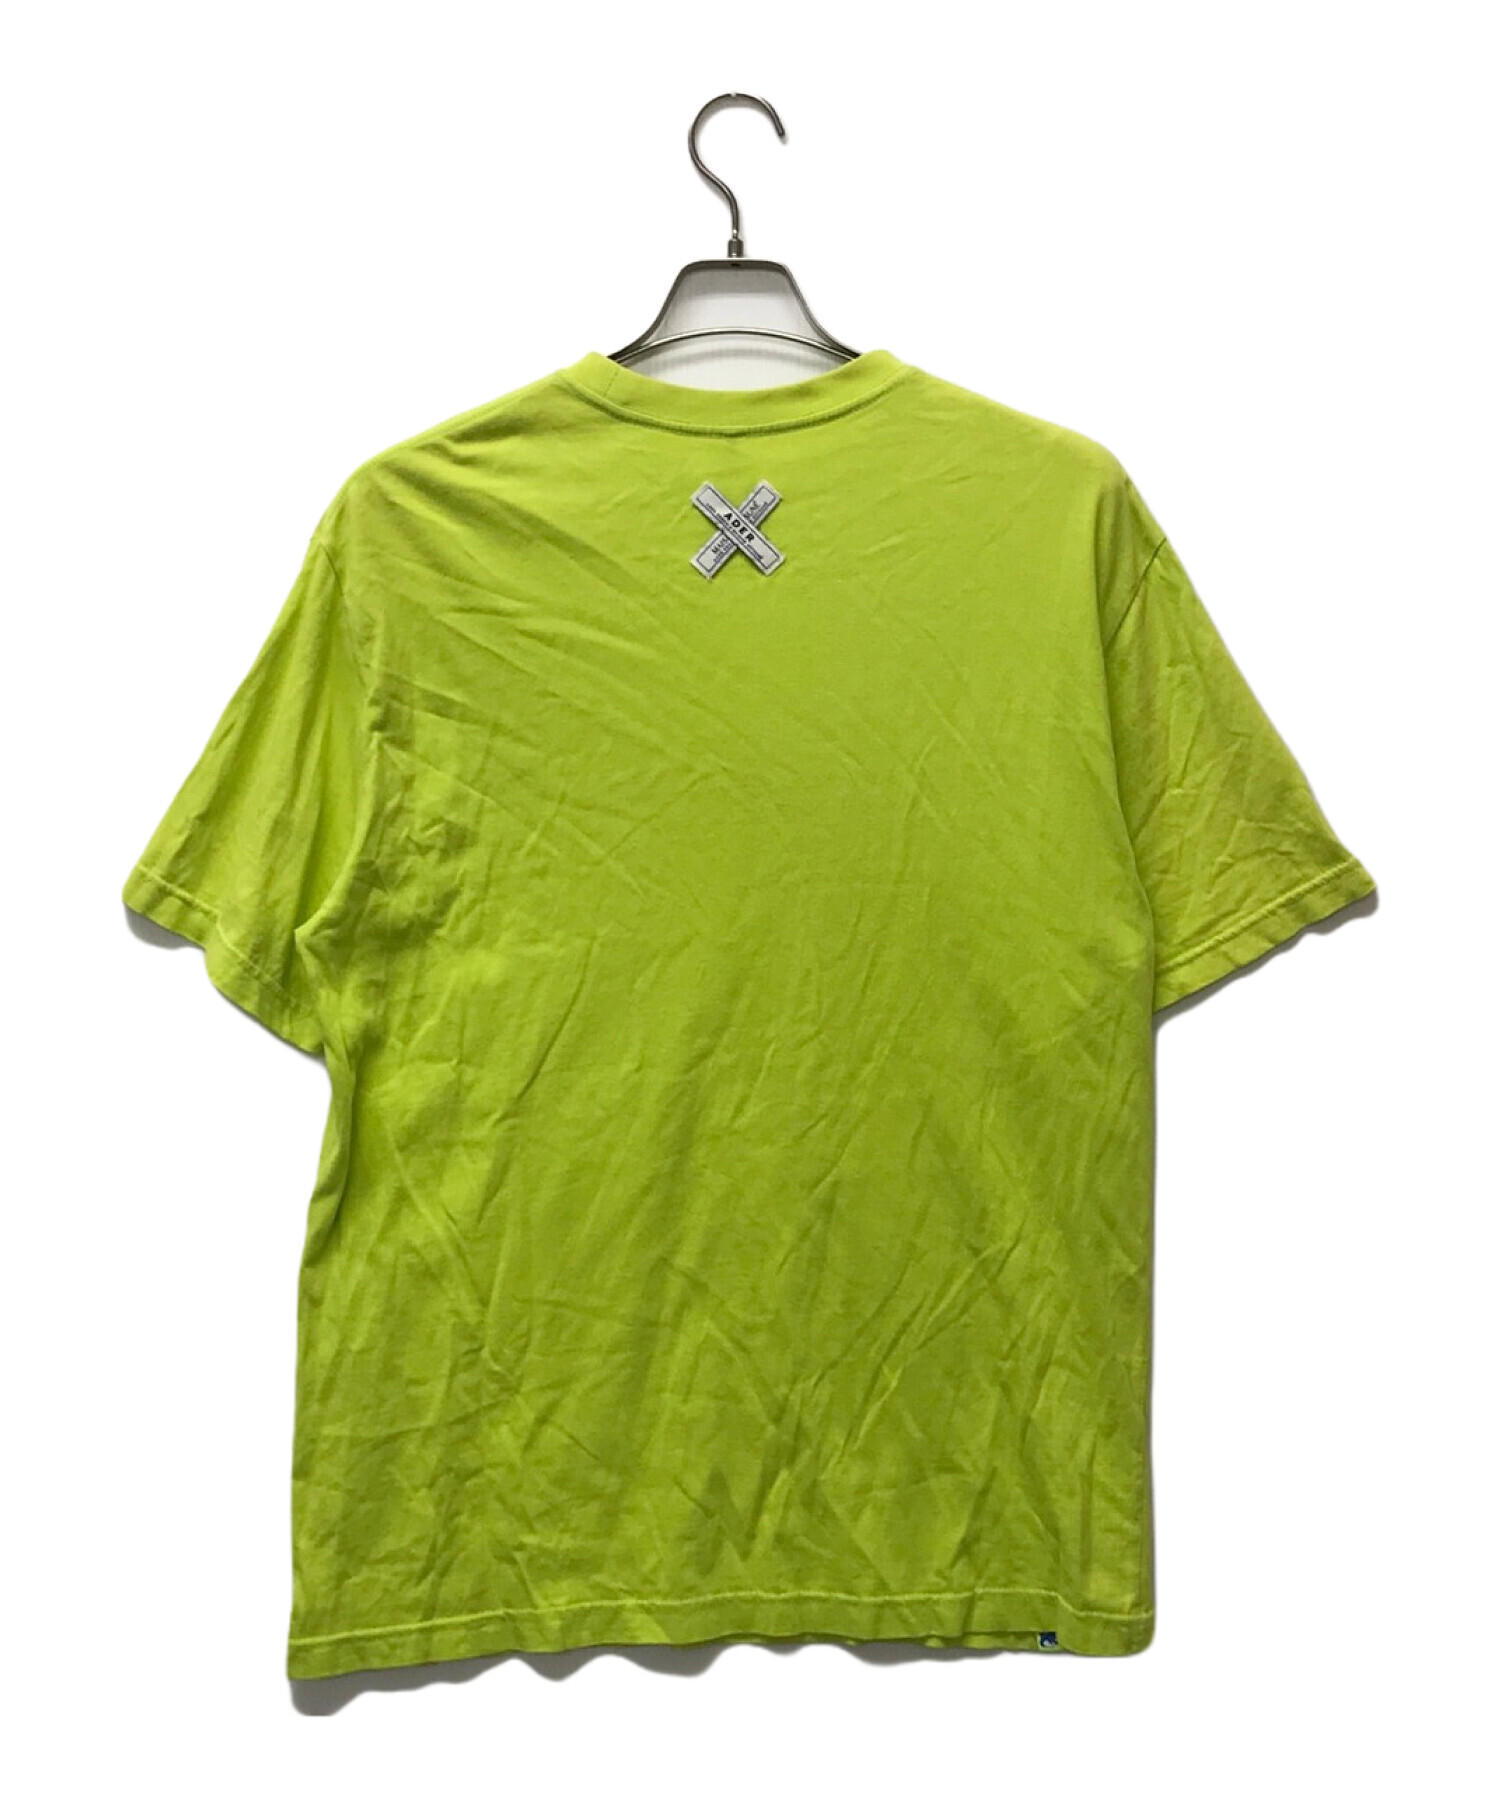 ADER error (アーダーエラー) MAISON KITSUNE (メゾンキツネ) コラボクルーネックロゴTシャツ グリーン サイズ:3